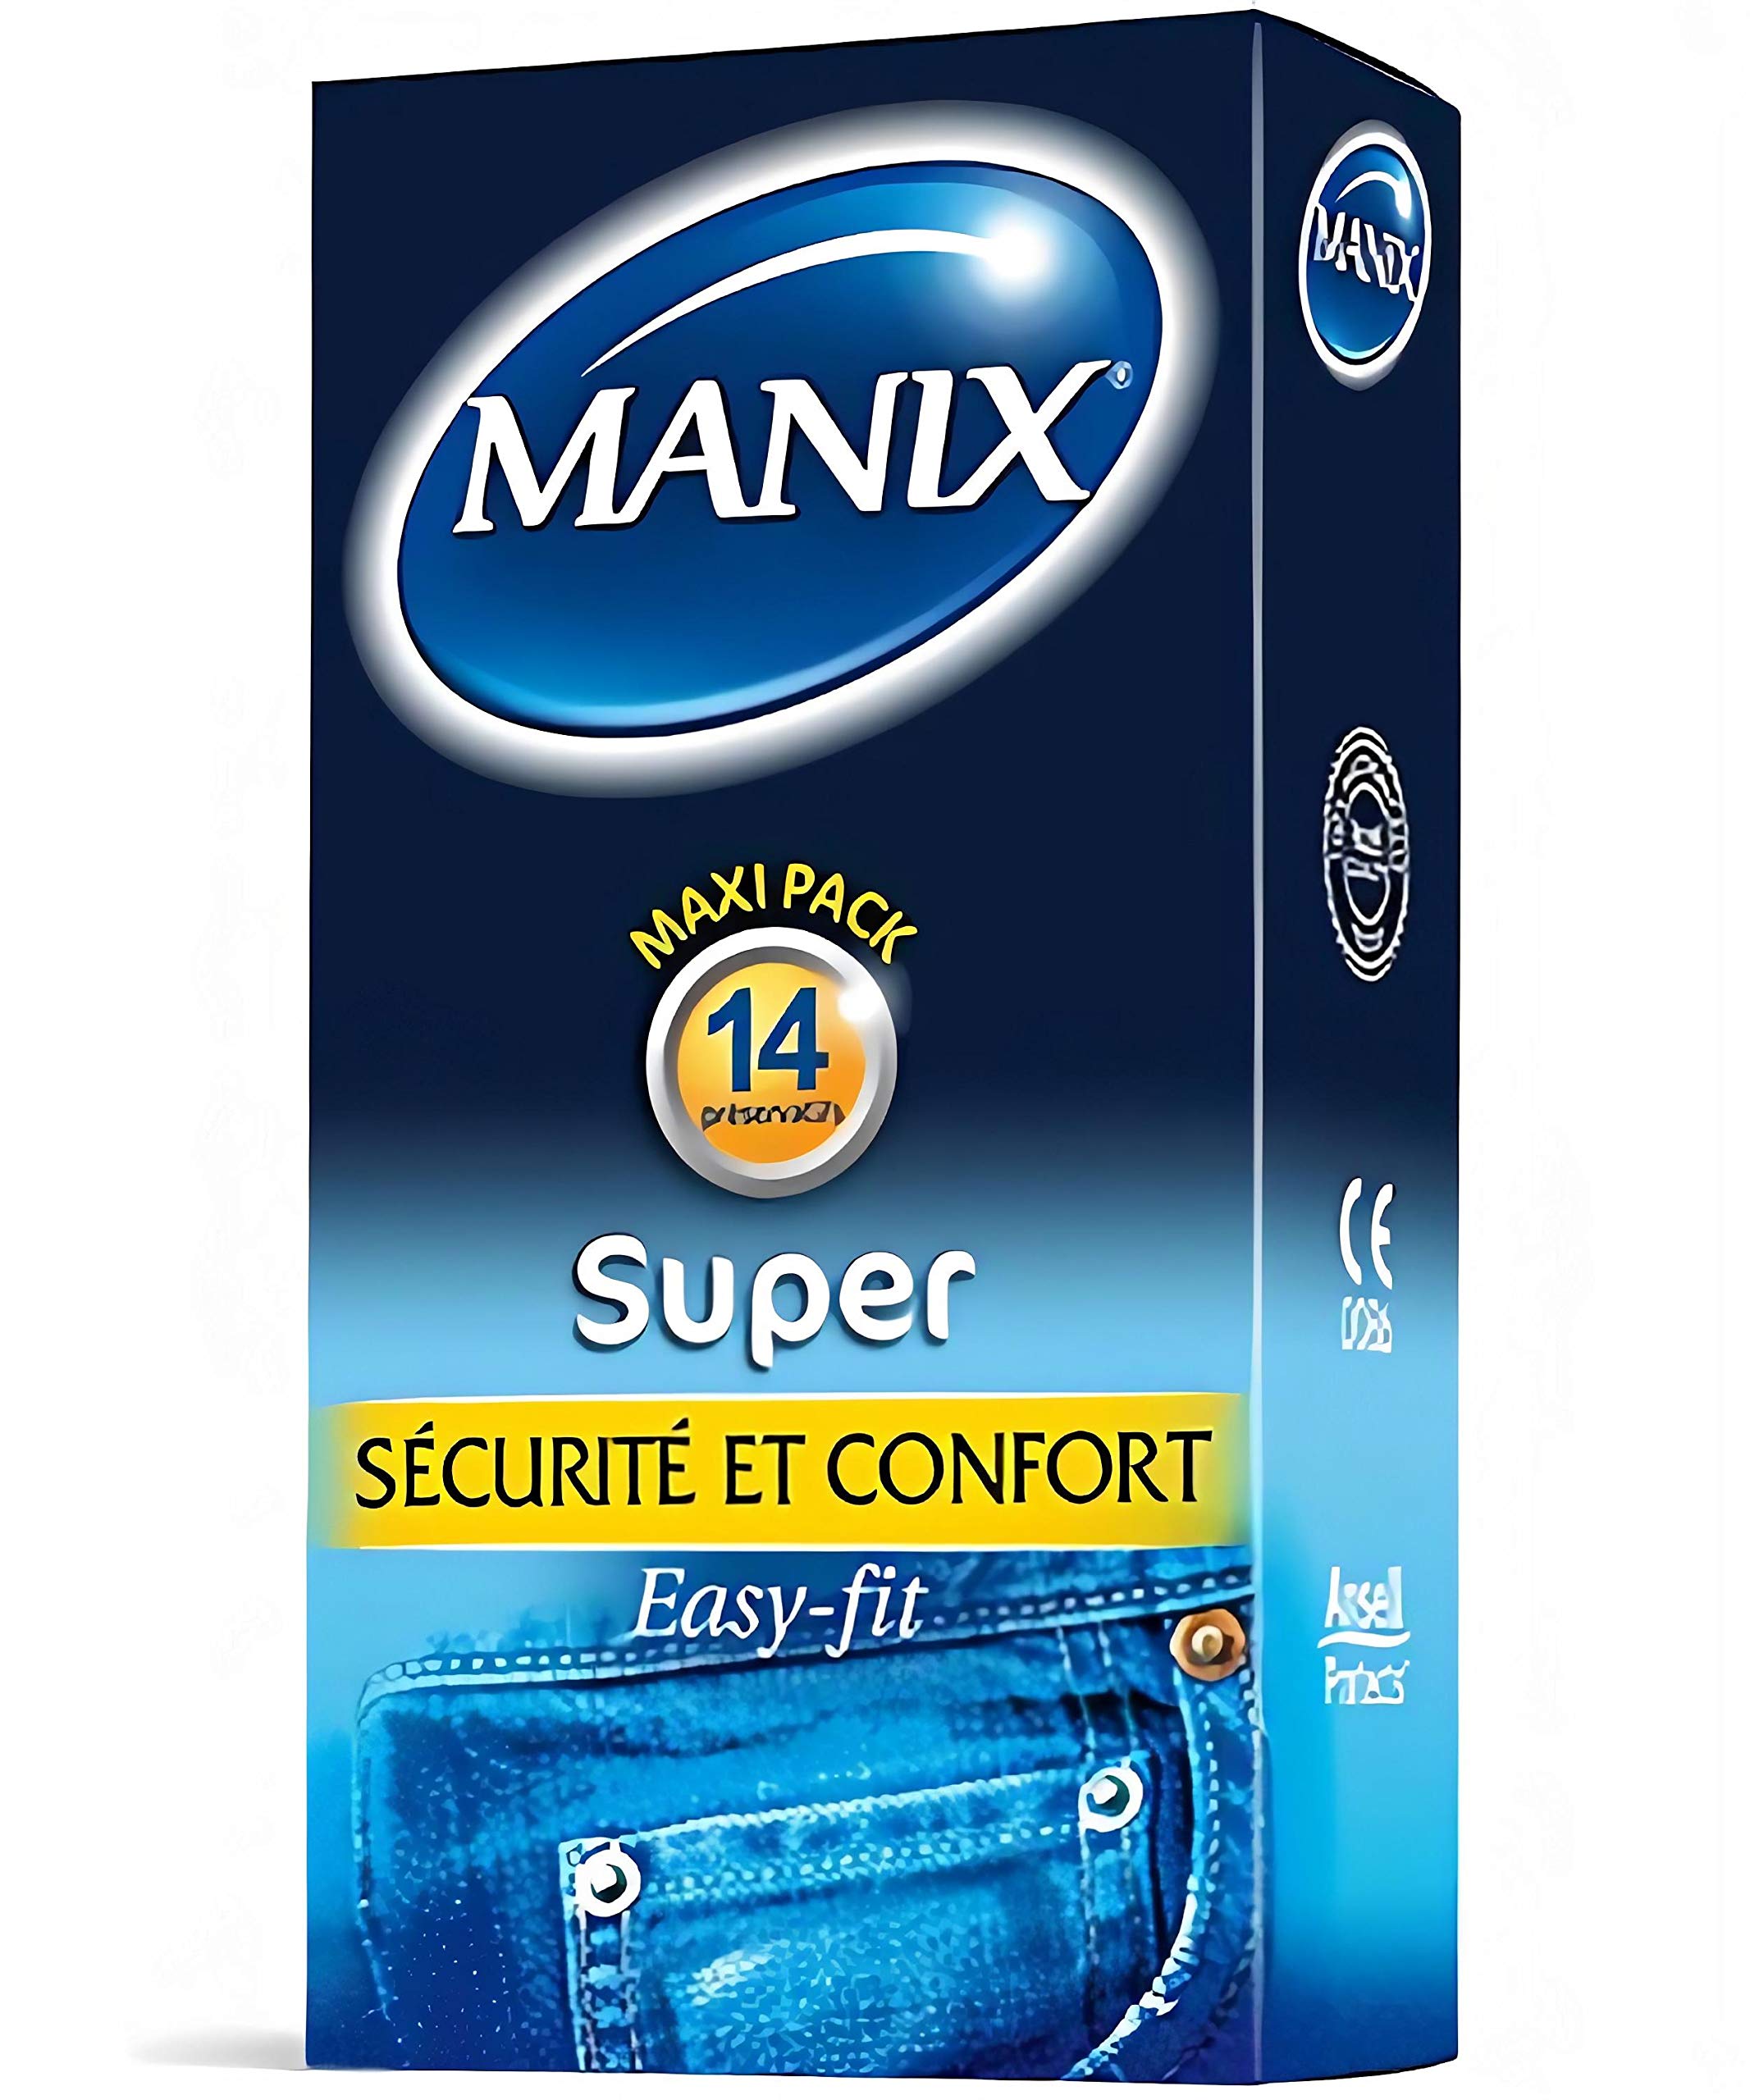 Manix Super: Box mit 144 klassischen Kondomen aus Latex/Kondome für Herren, geschmiert und dünn, Standardgröße/Durchmesser 52 mm